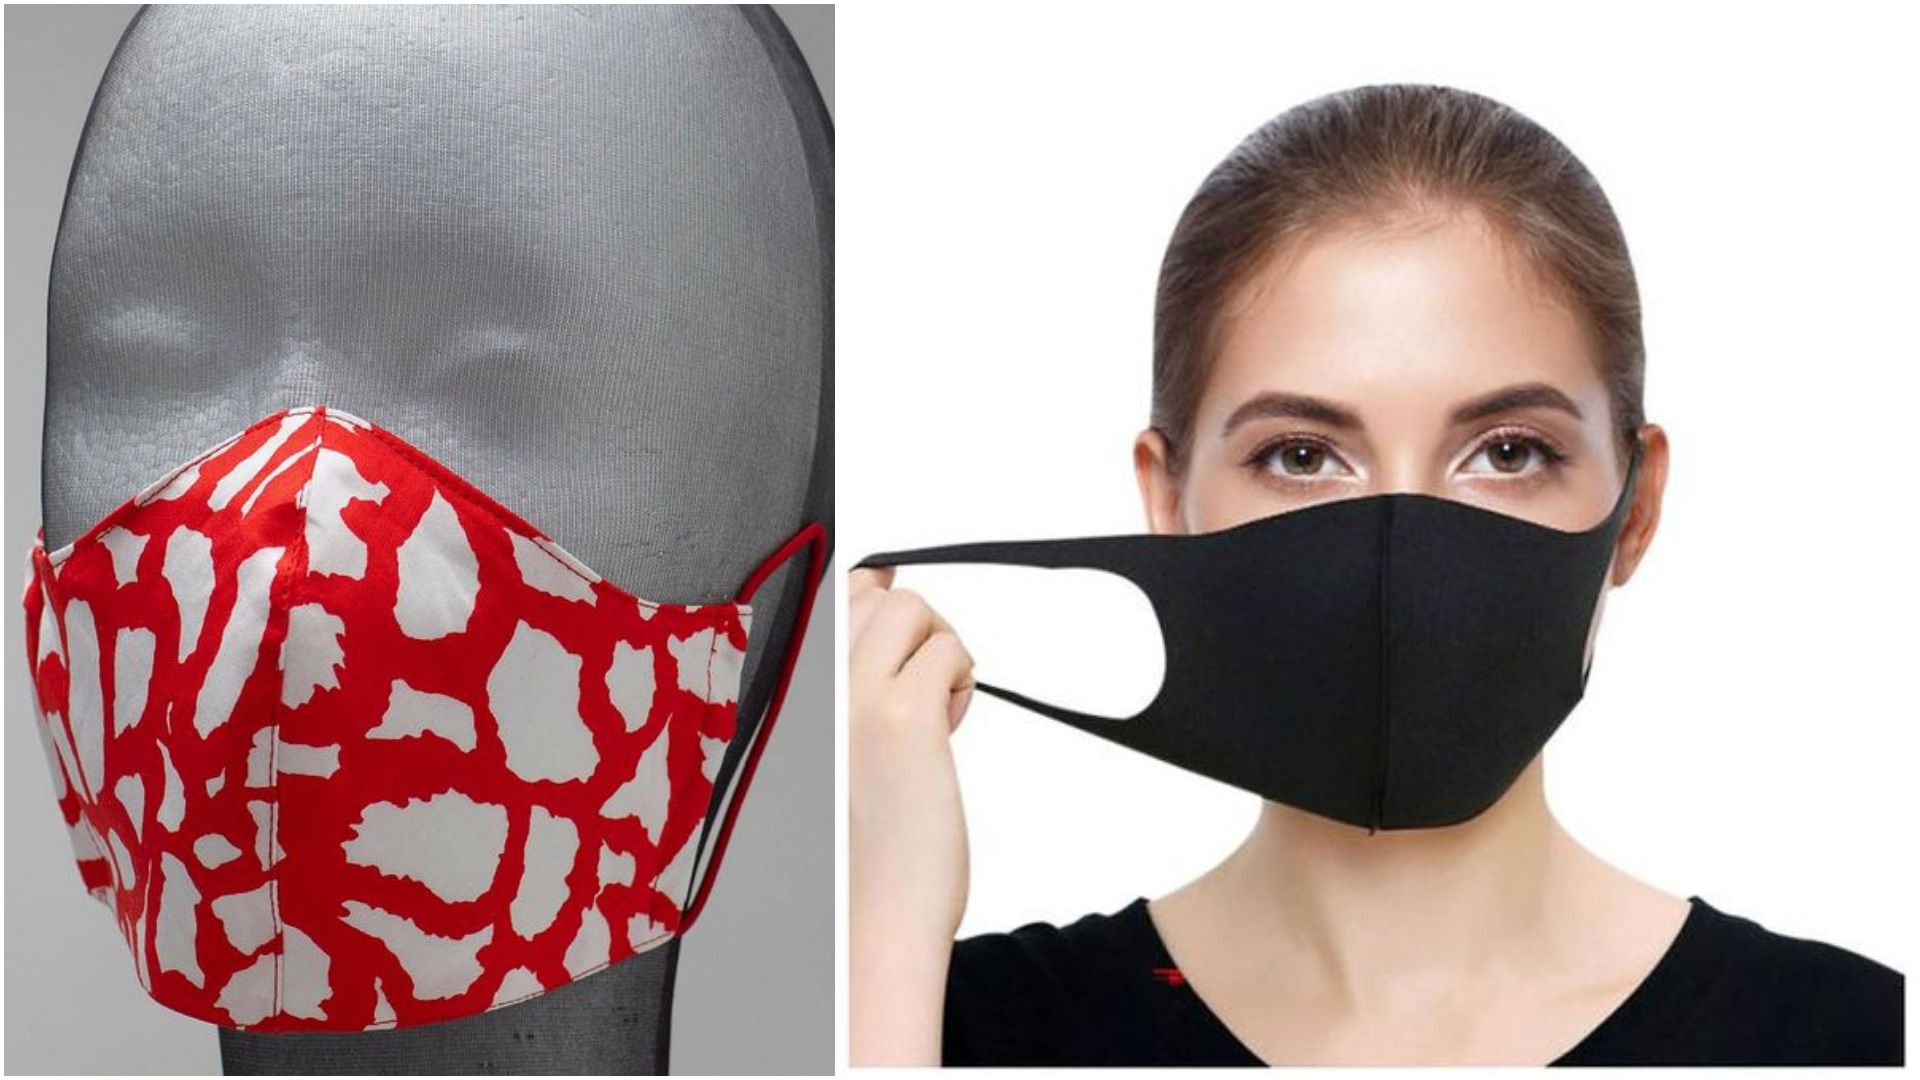 Izdvojili smo hrvatske web shopove na kojima možete kupiti pamučne maske za lice